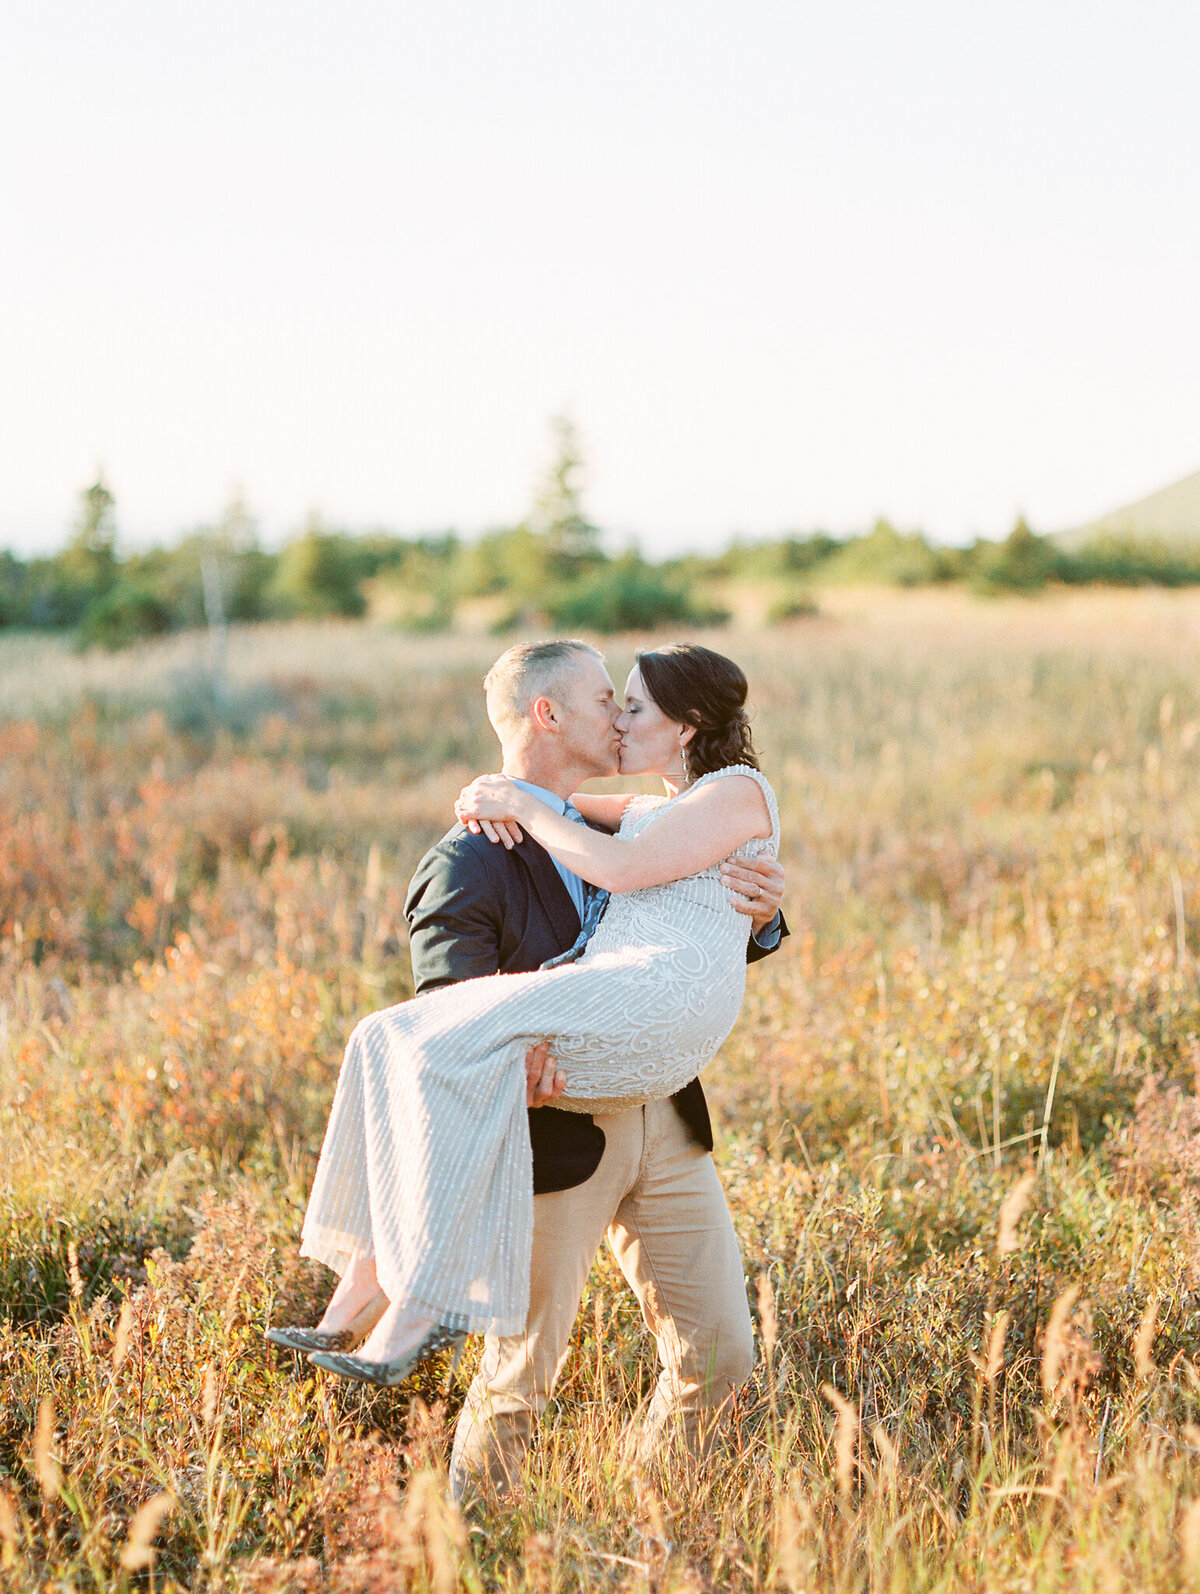 Alaska elopement photographer in fall